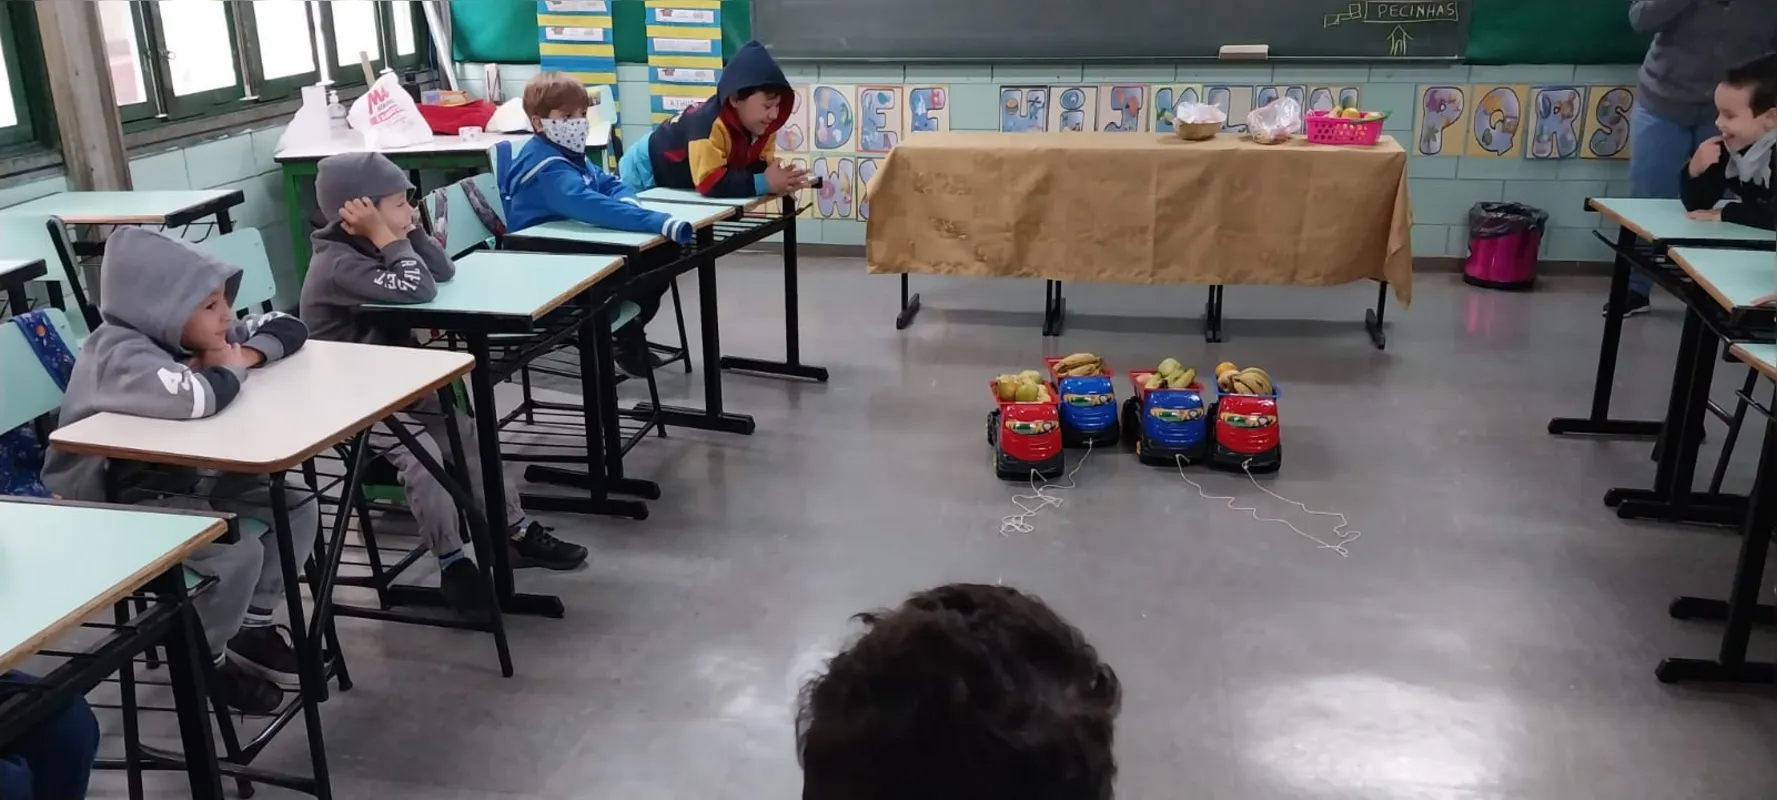 Na escola Municipal Mari Carrera Bueno, a simulação do transporte dos alimentos, em caminhões de brinquedo, integra o processo de alimentação